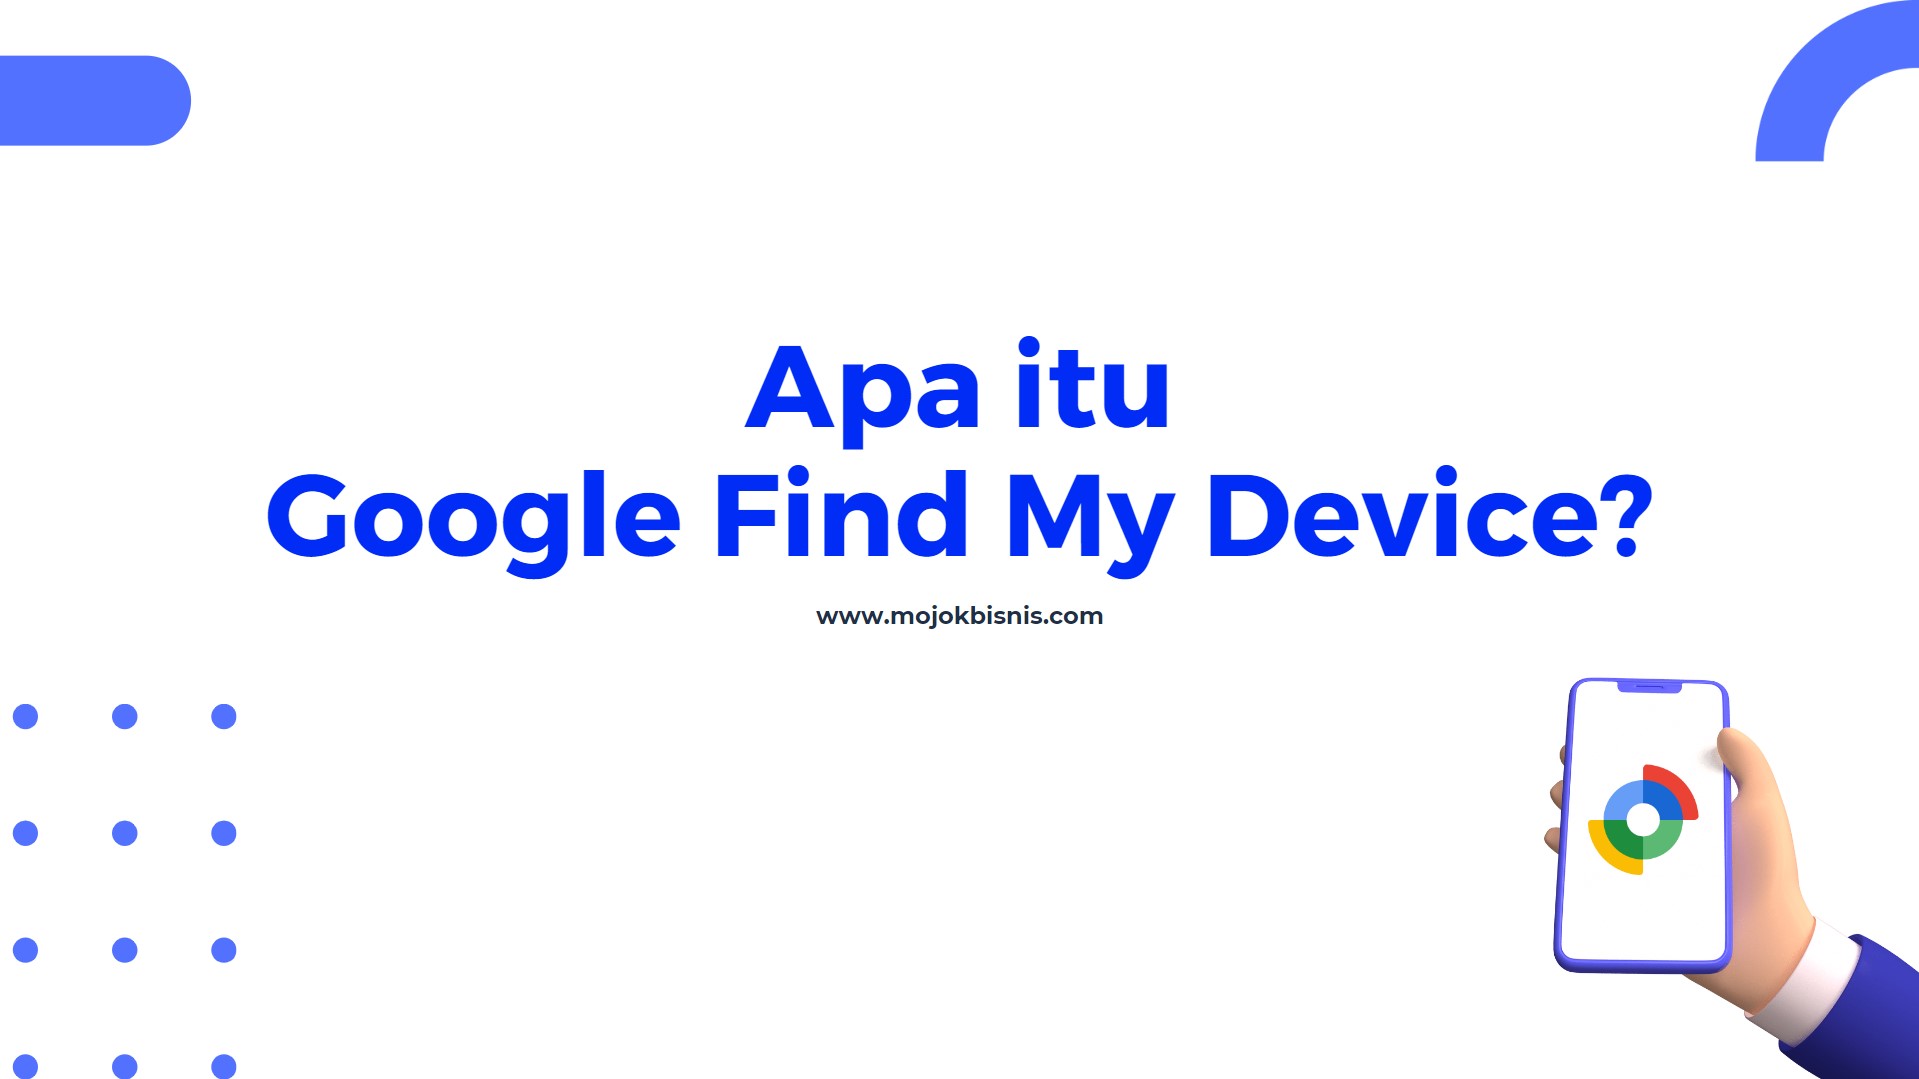 Apa itu Google Find My Device